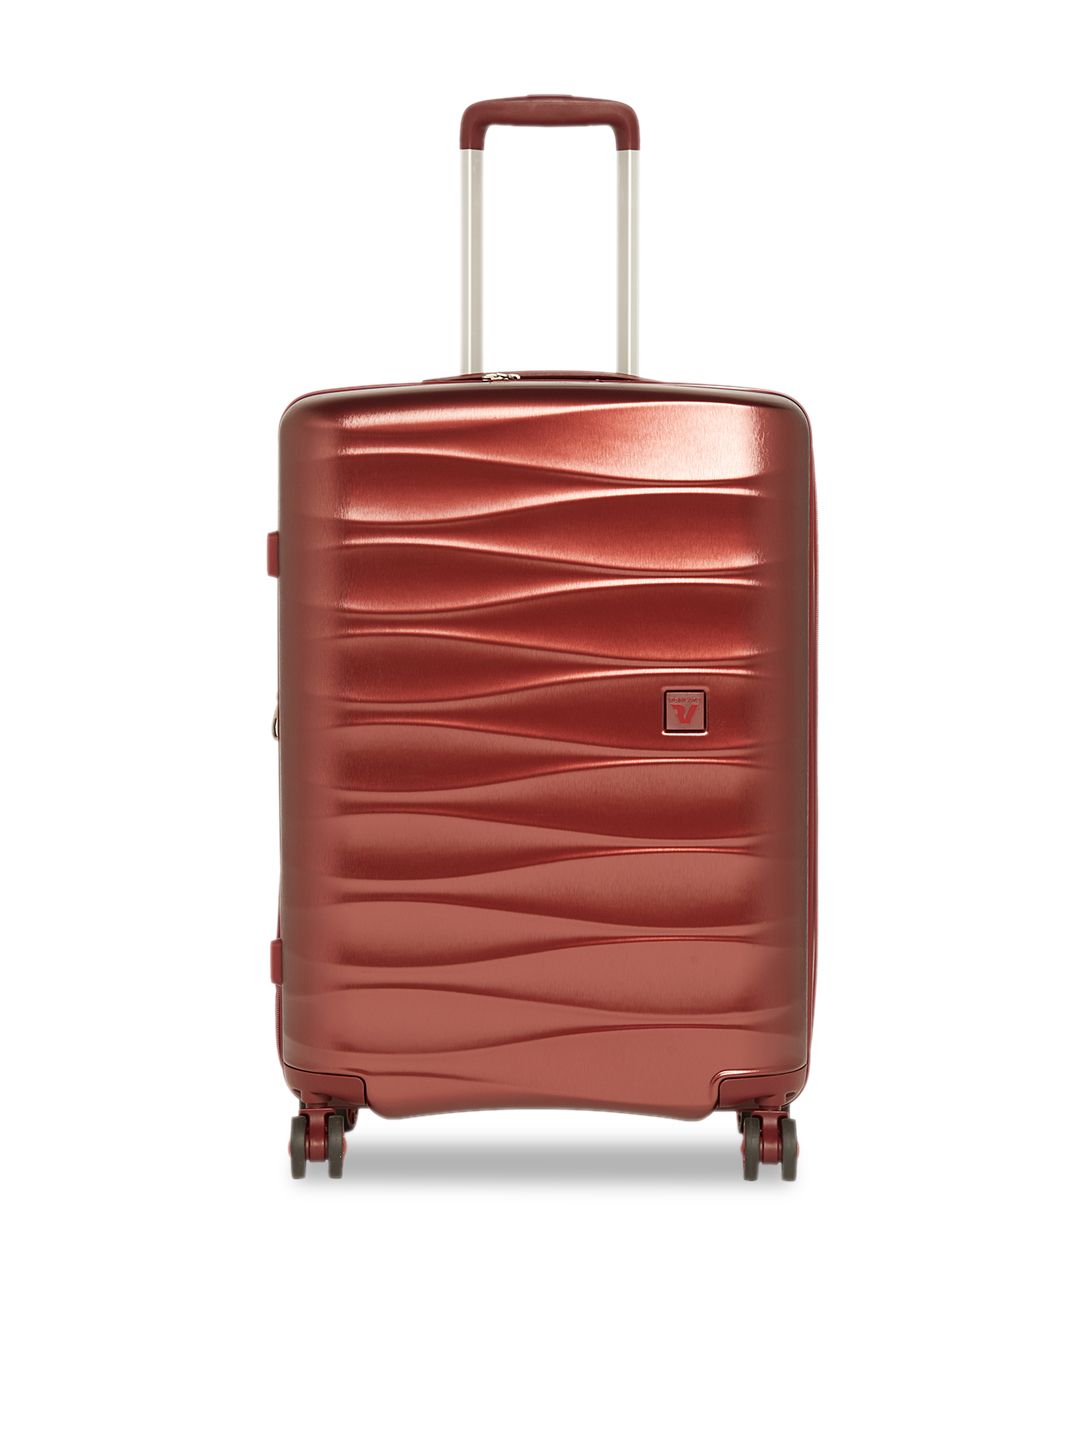 RONCATO STELLAR Range Brown Hard Medium Luggage Price in India